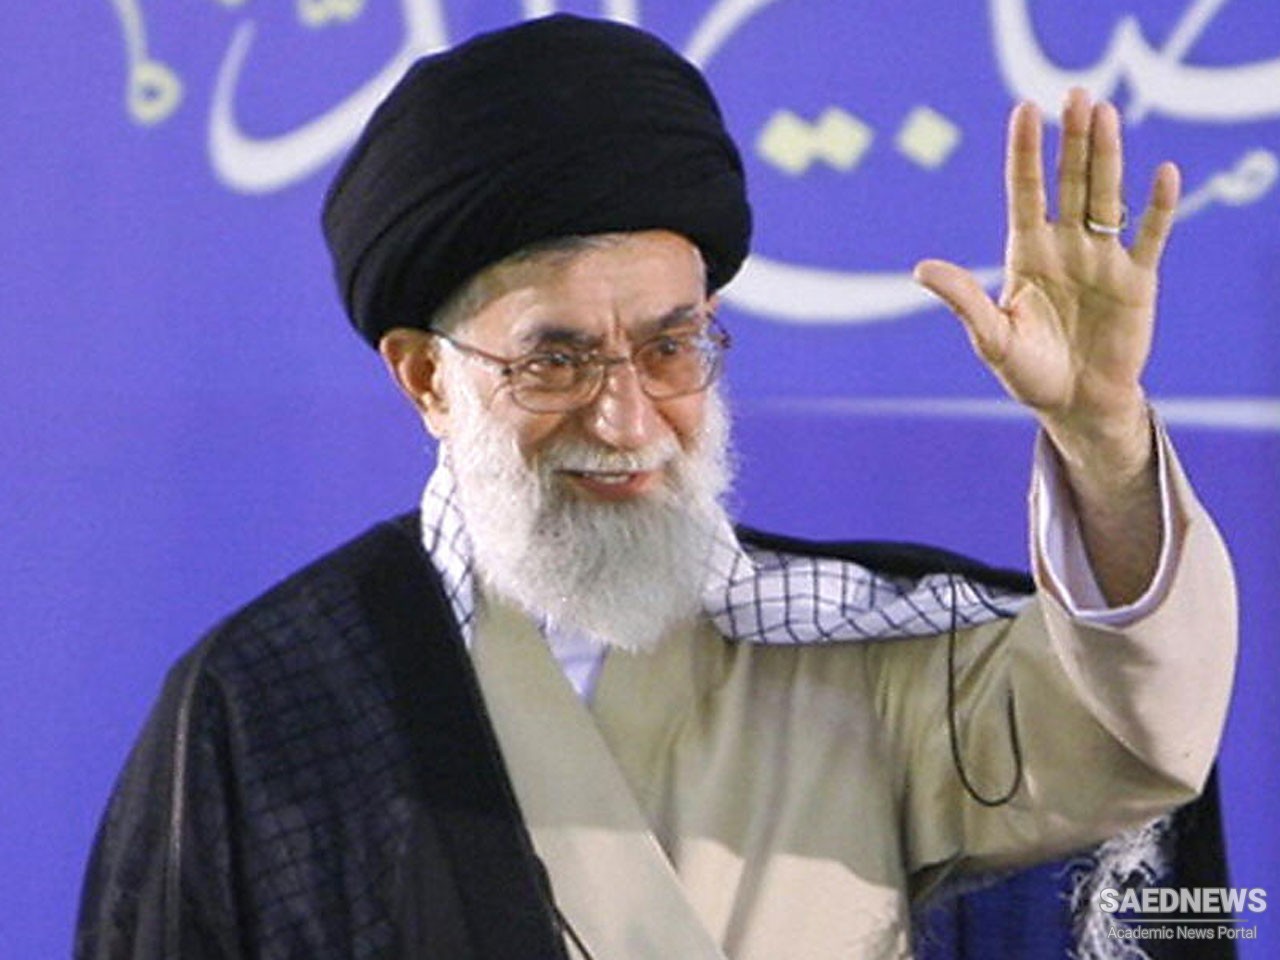 ईरान के सर्वोच्च नेता शुक्रवार को एक टेलीविज़न फॉर्म में राष्ट्र को संबोधित करेंगे